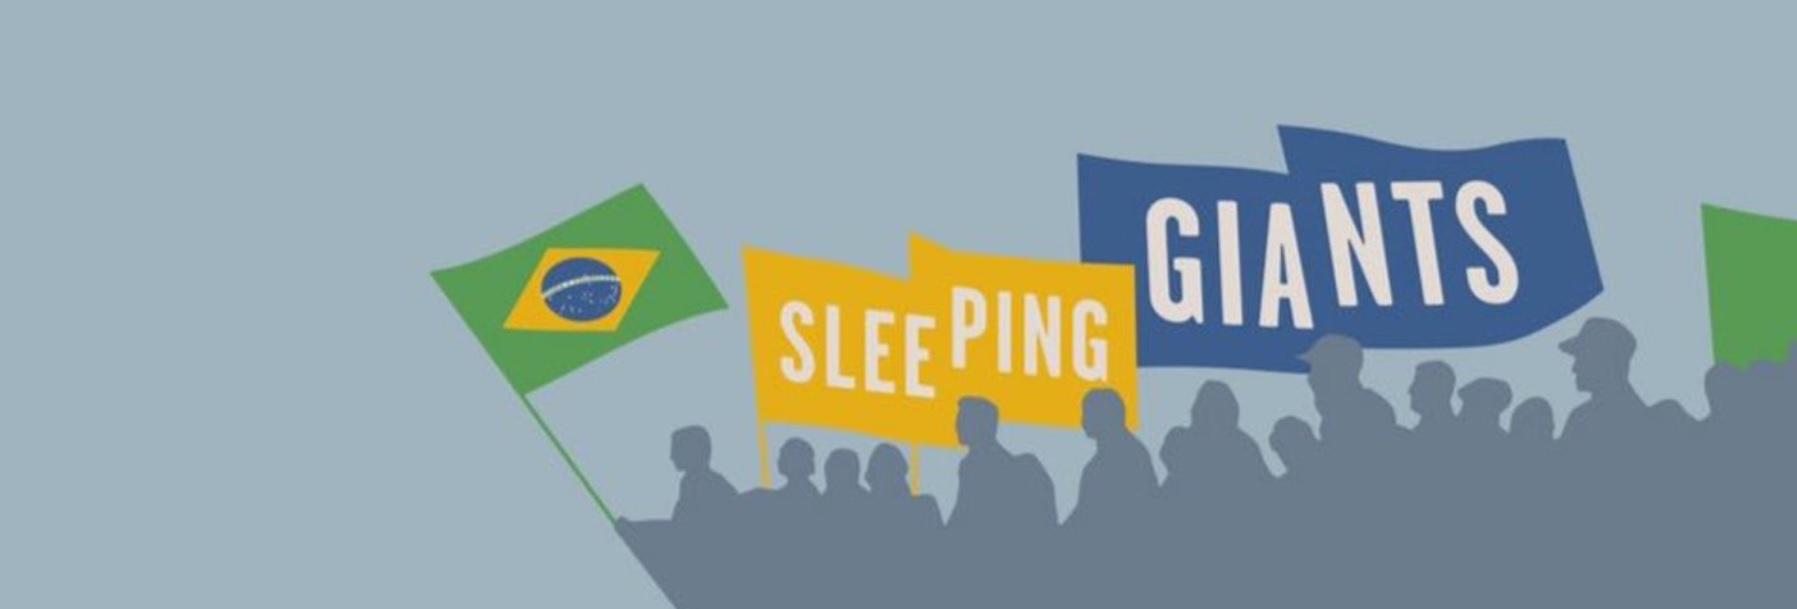 Sleeping giants brasil